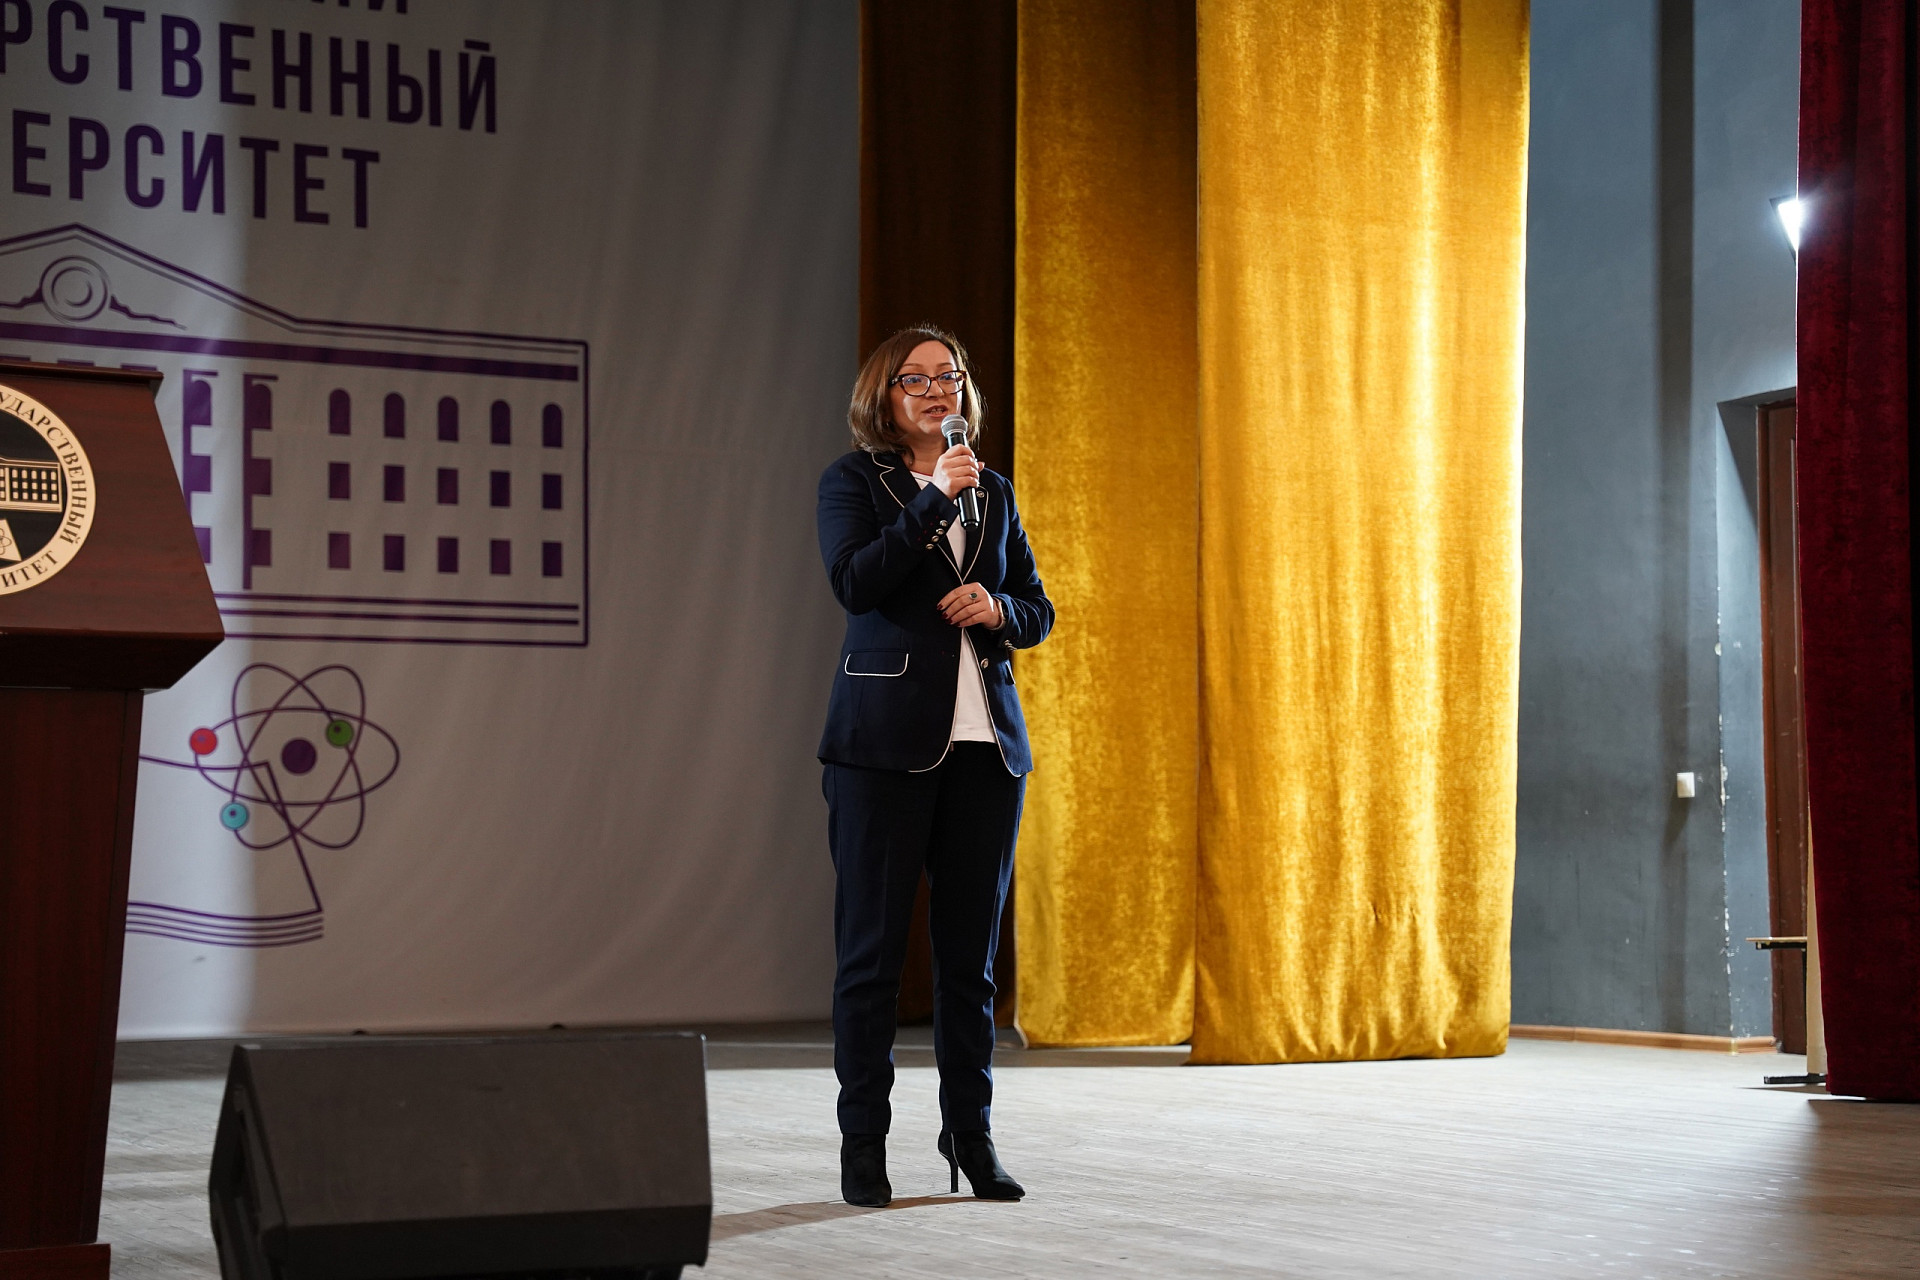 Форум «Педагоги России: инновации в образовании» прошел в ДГУ